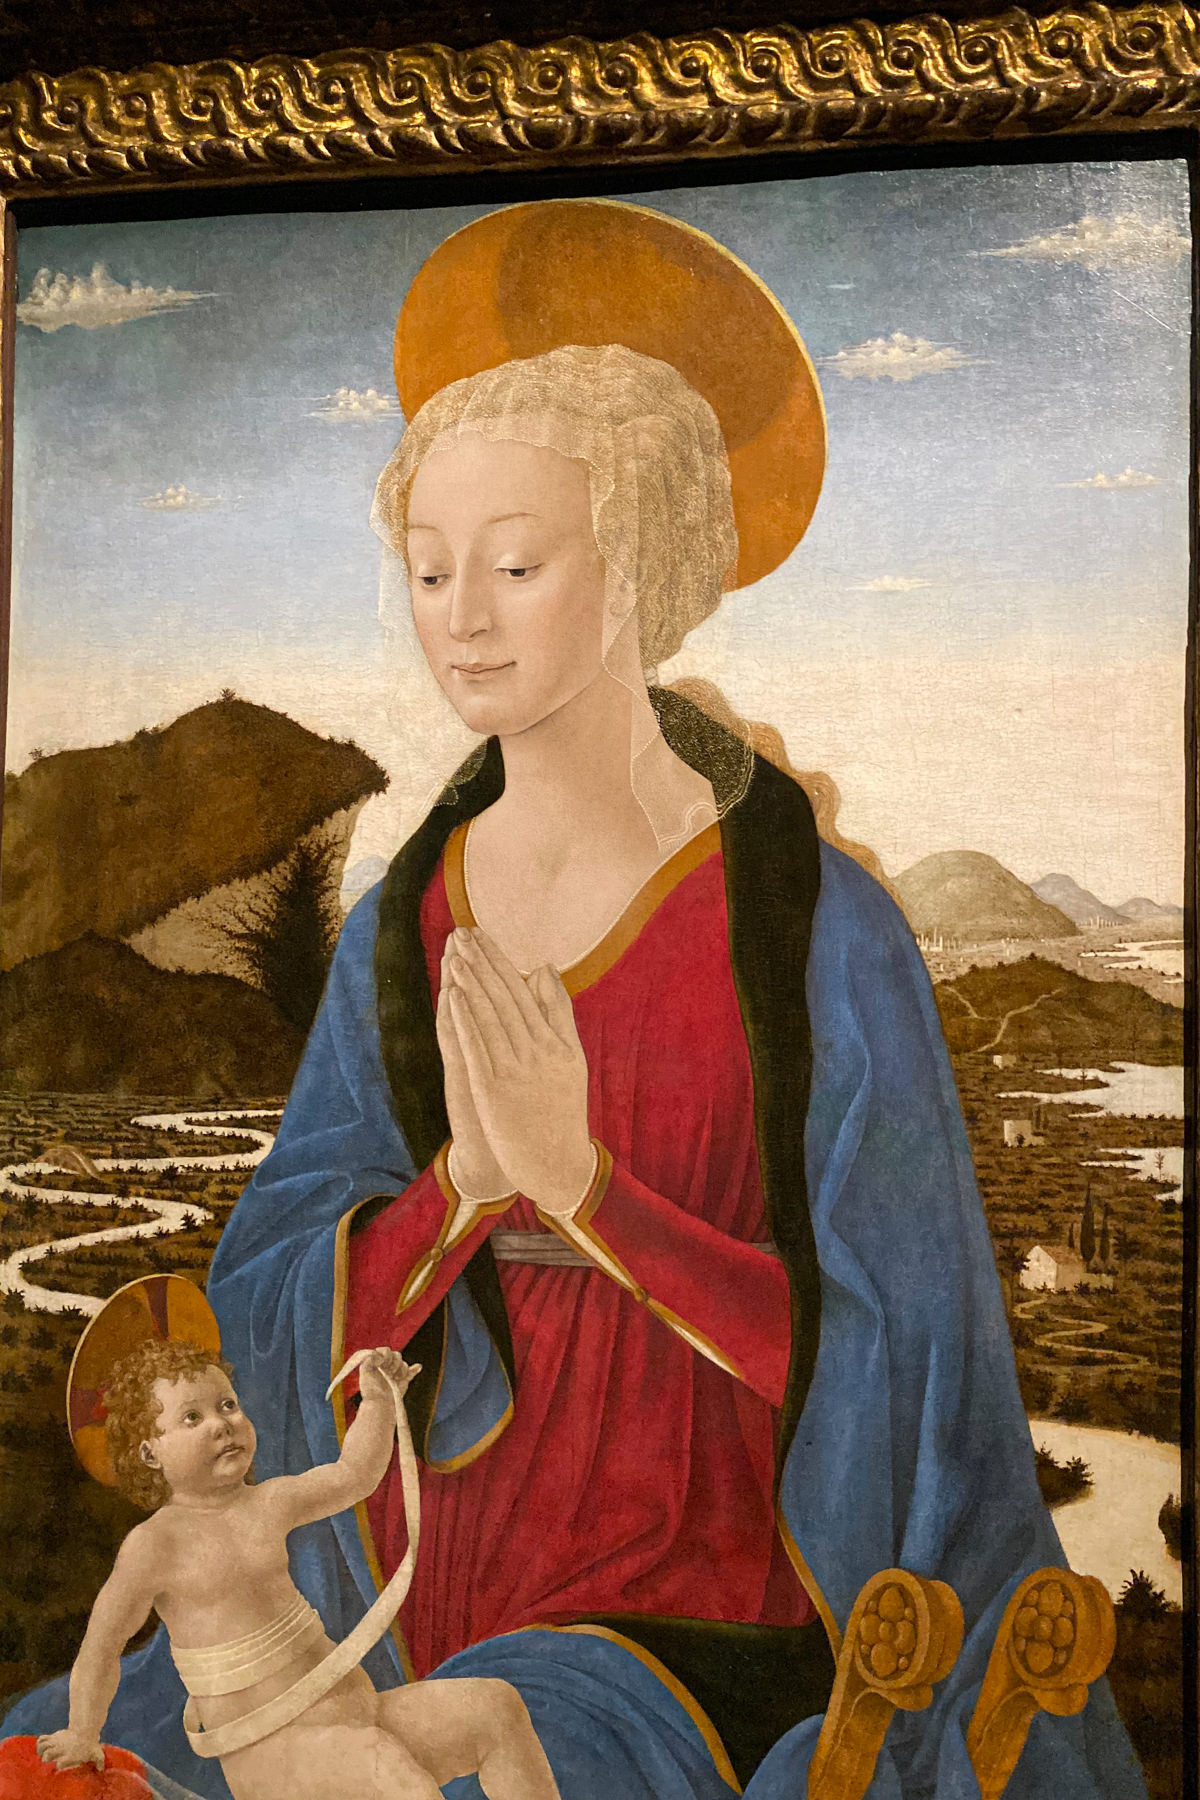 Leonardo da Vinci Exhibition in the Louvre Museum: Madonna and Child